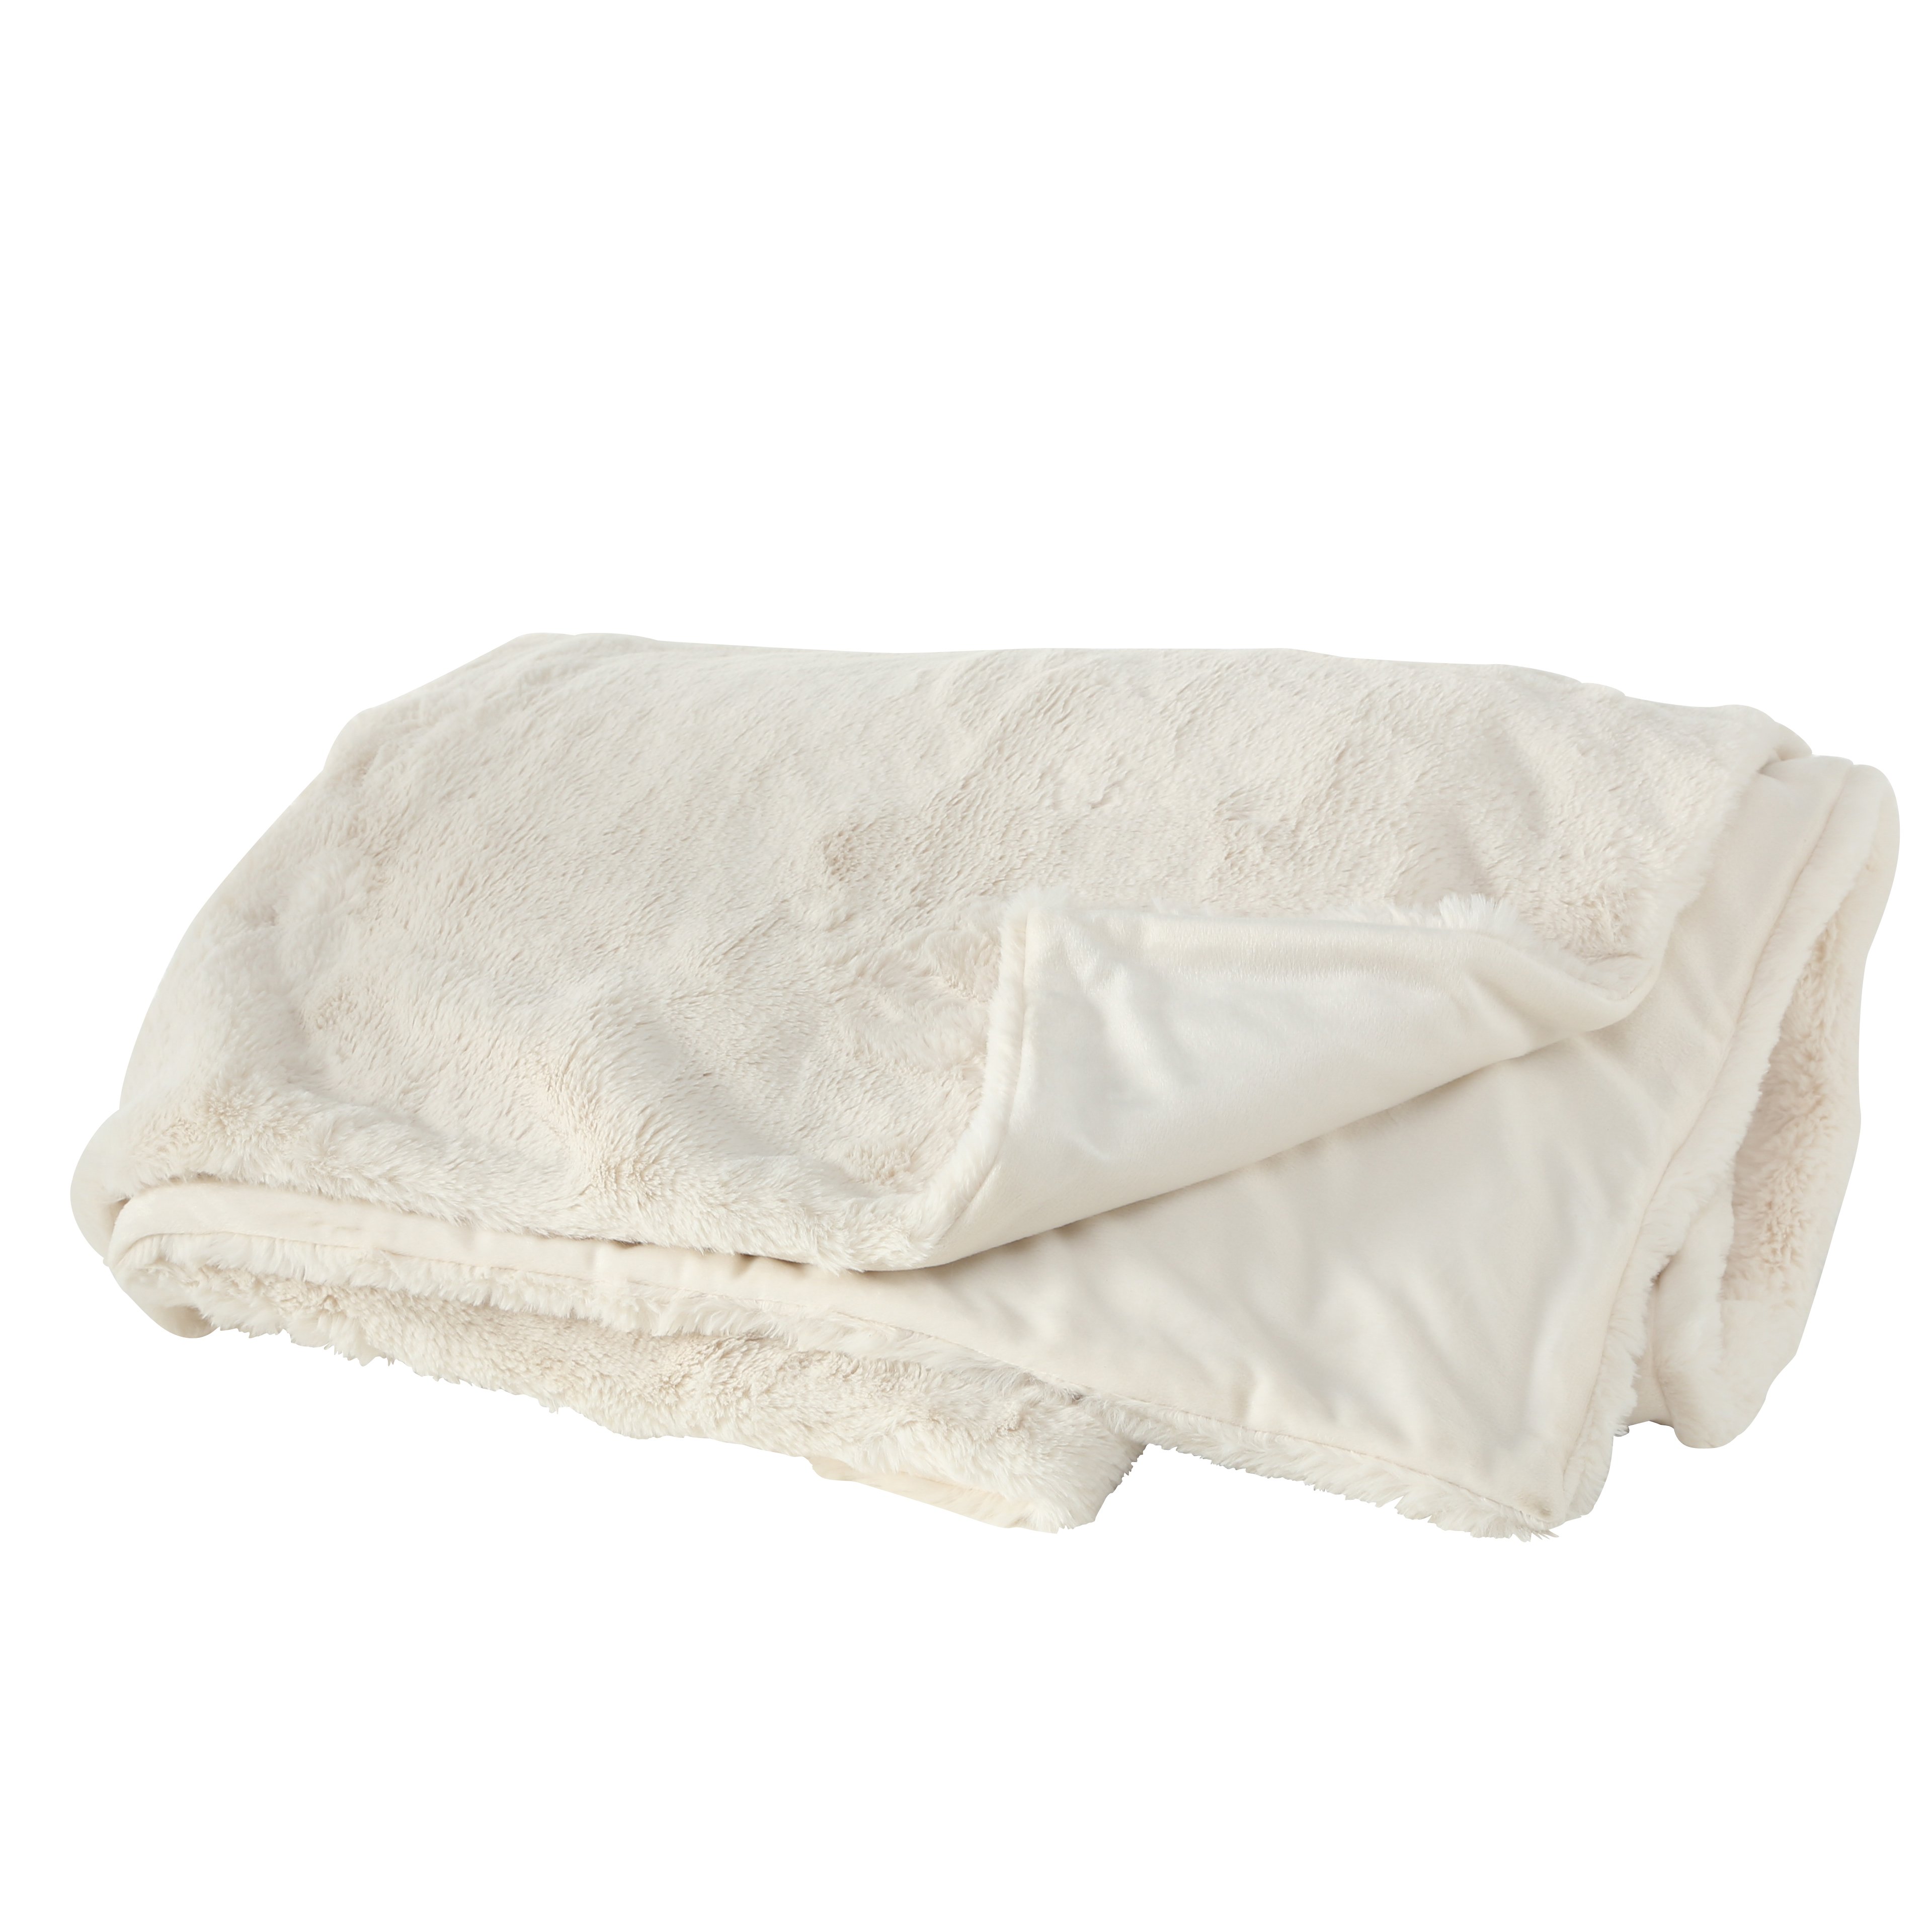 Hochwertige Kuscheldecke in creme weiß, Tagesdecke, Decke 200x150 cm, 1015376, 4020607647046